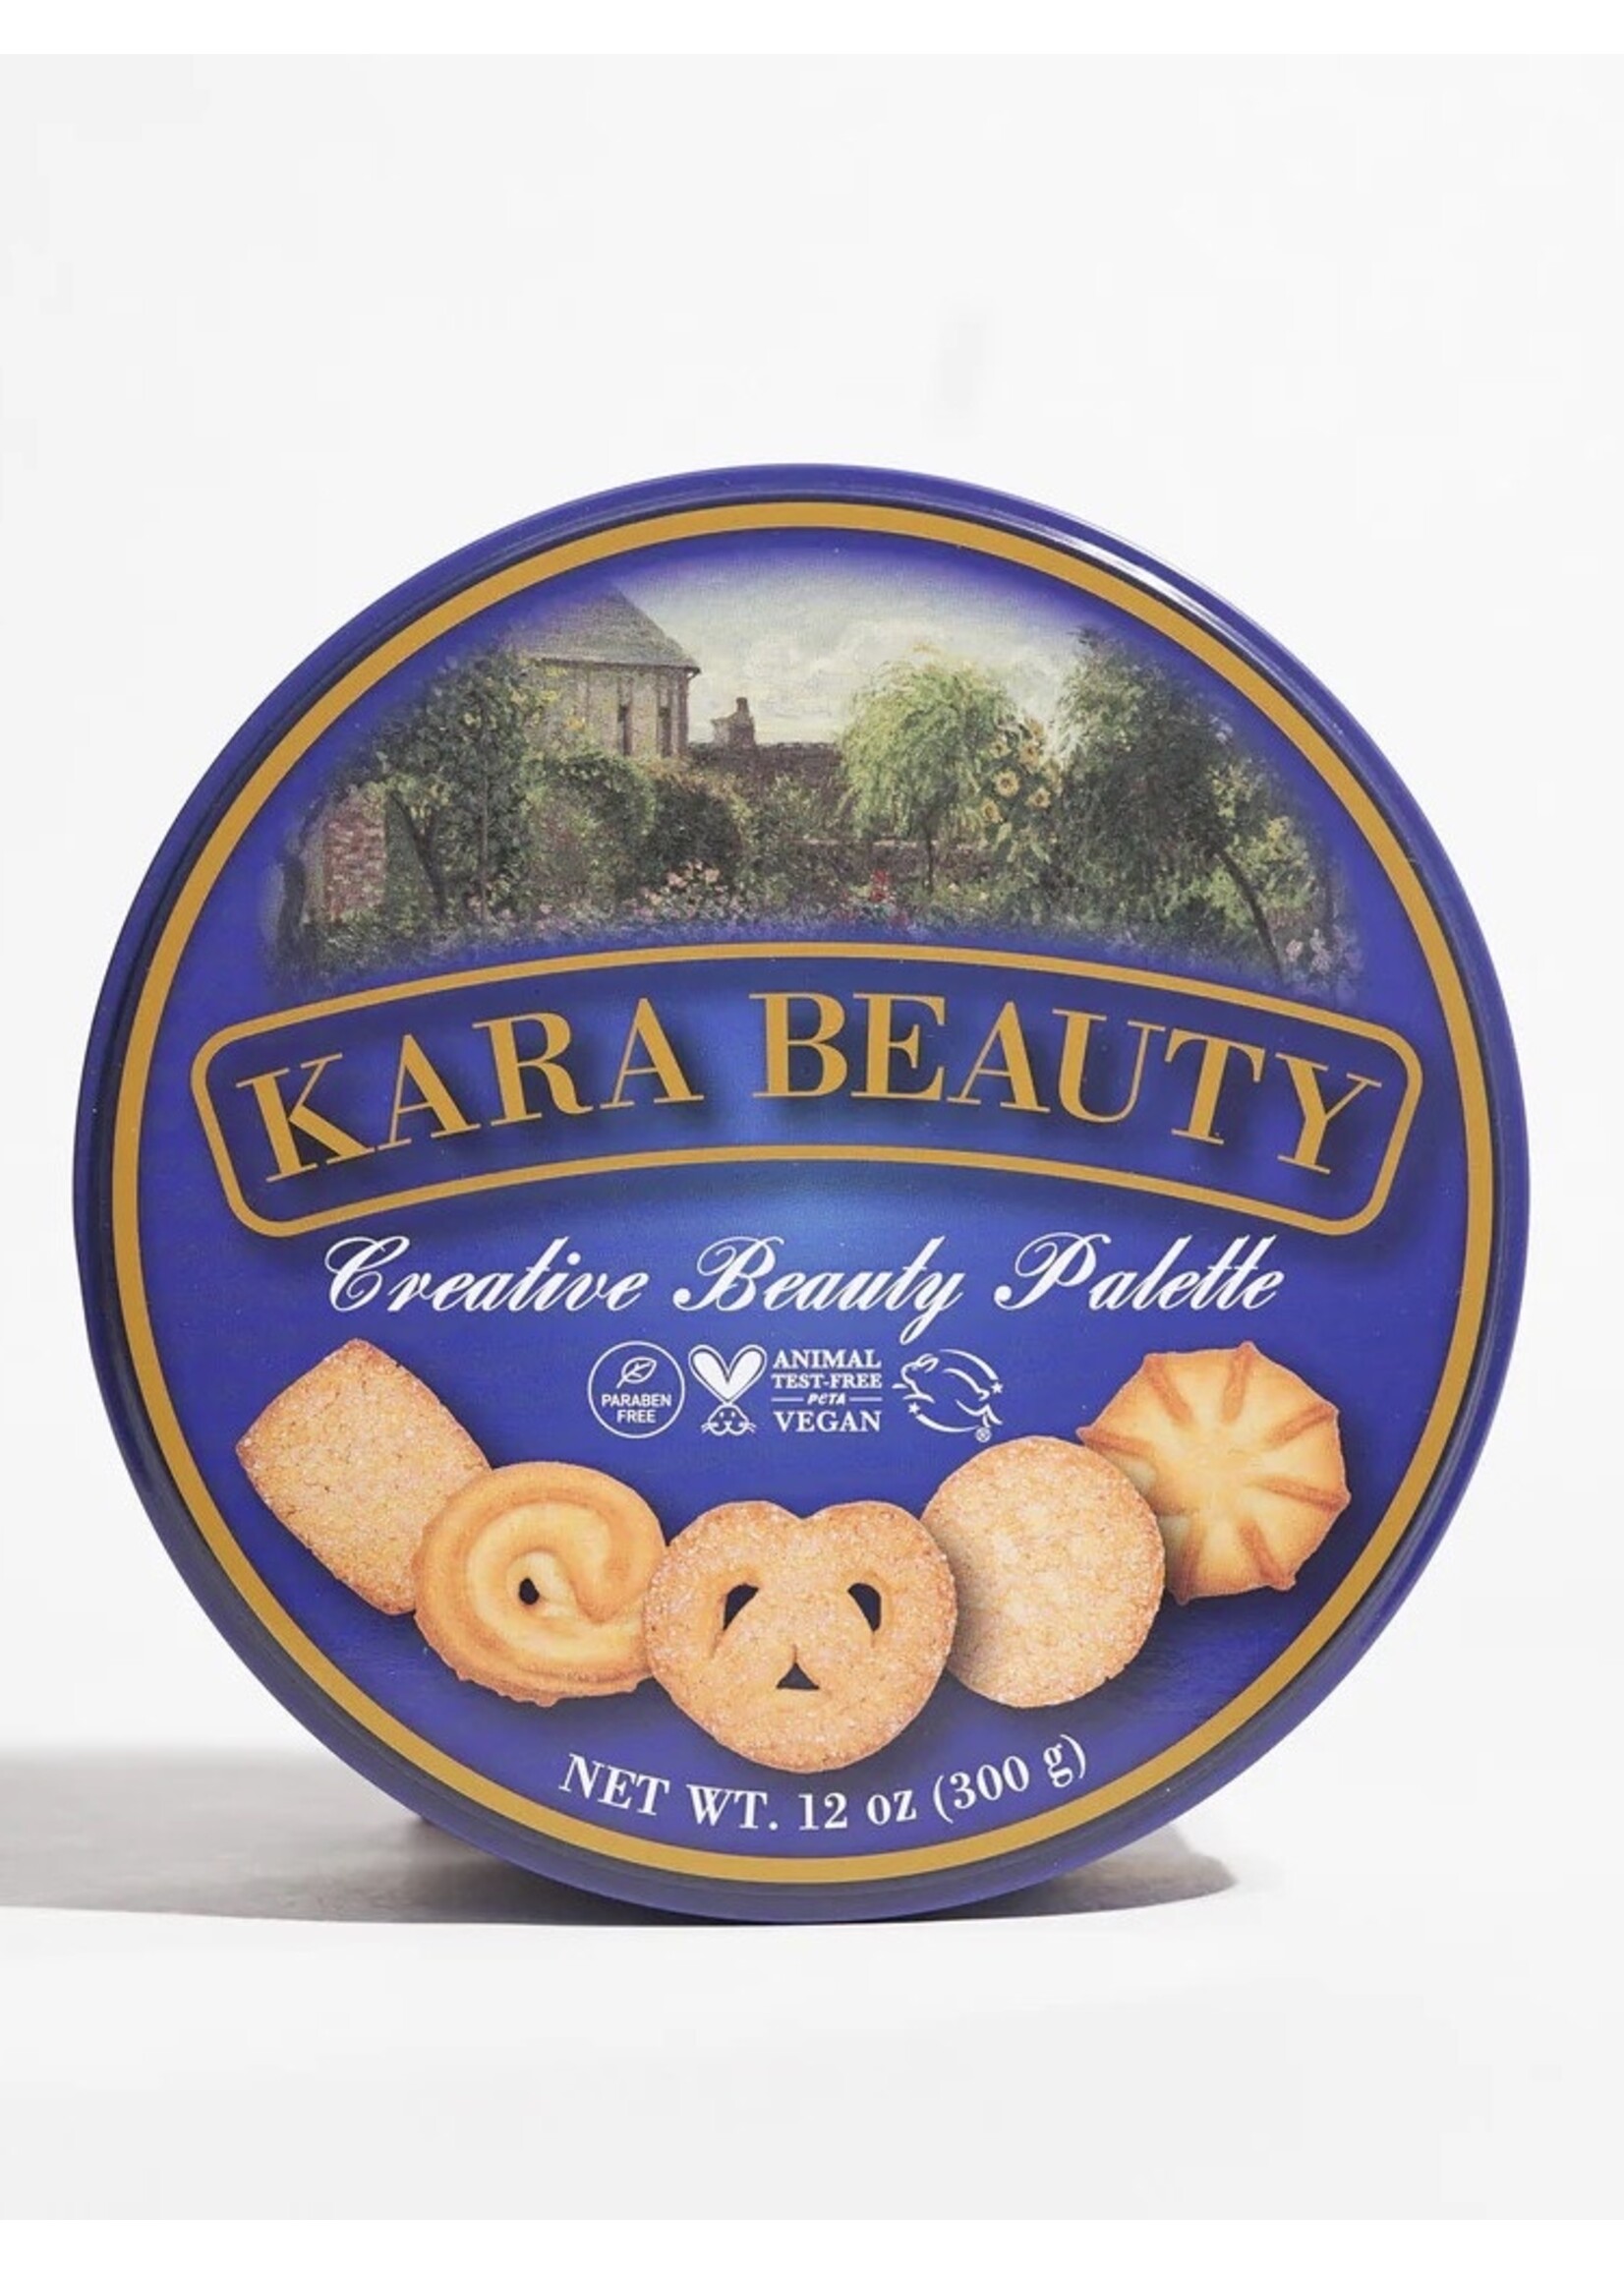 Kara Beauty "Cookie Tin" creative beauty palette  by Kara Beauty